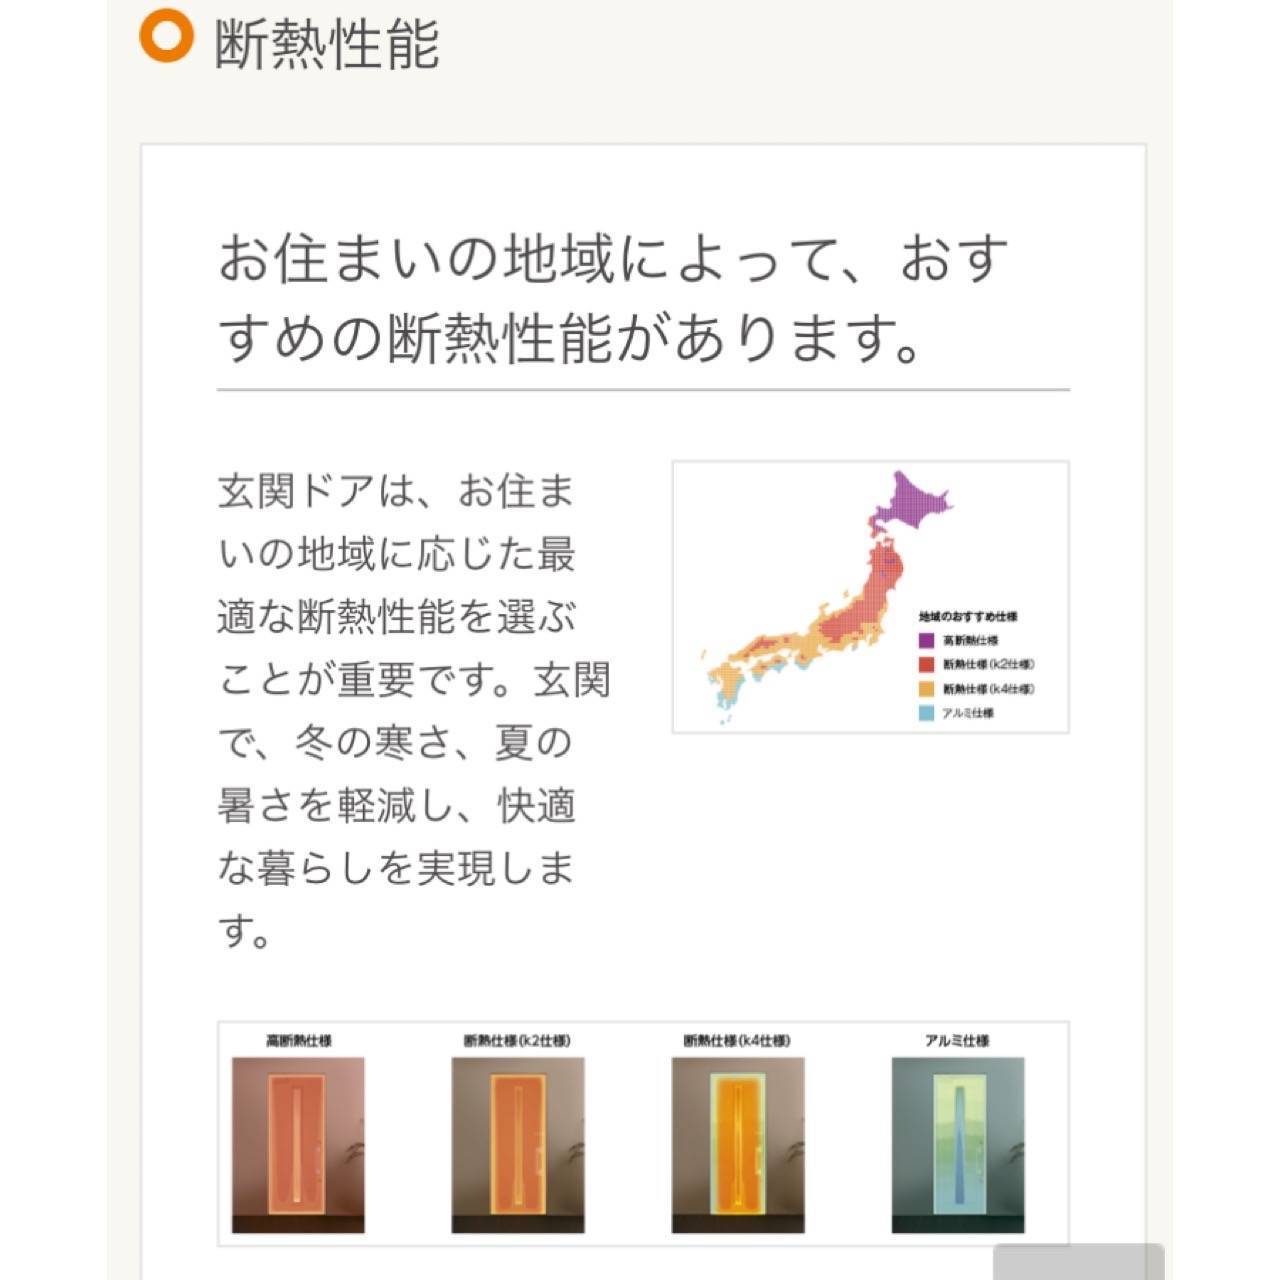 すまいの健康・快適だより2月号 原口建材店 熊本のブログ 写真3